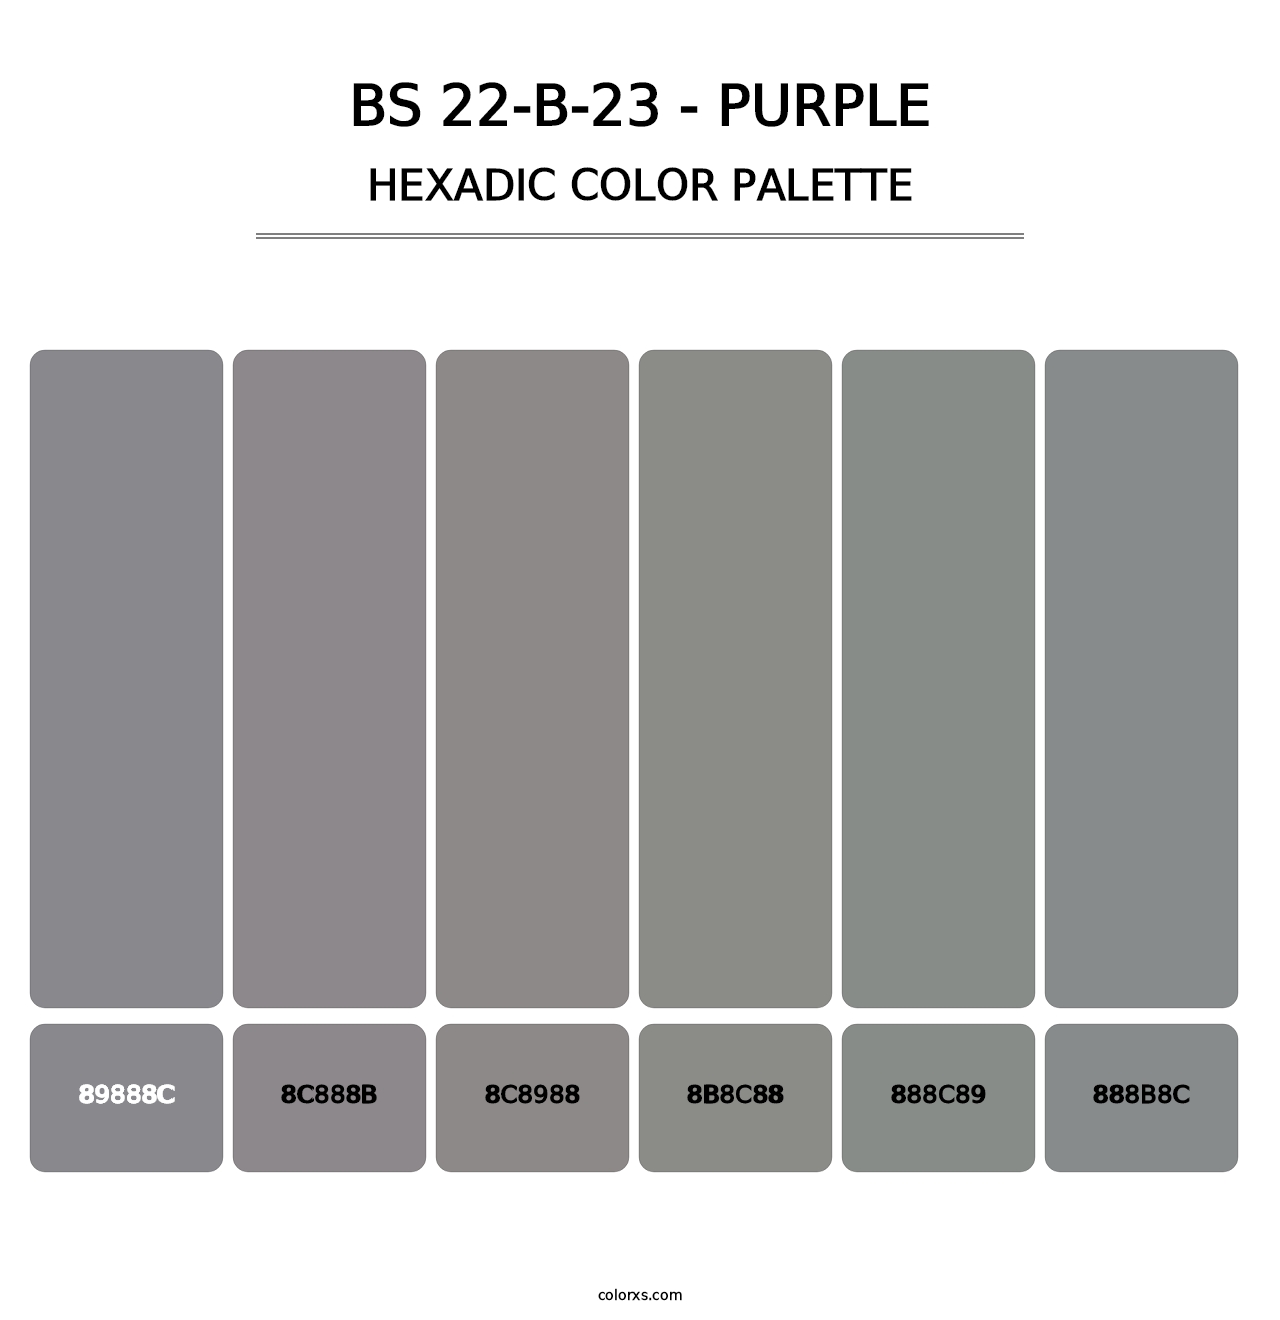 BS 22-B-23 - Purple - Hexadic Color Palette